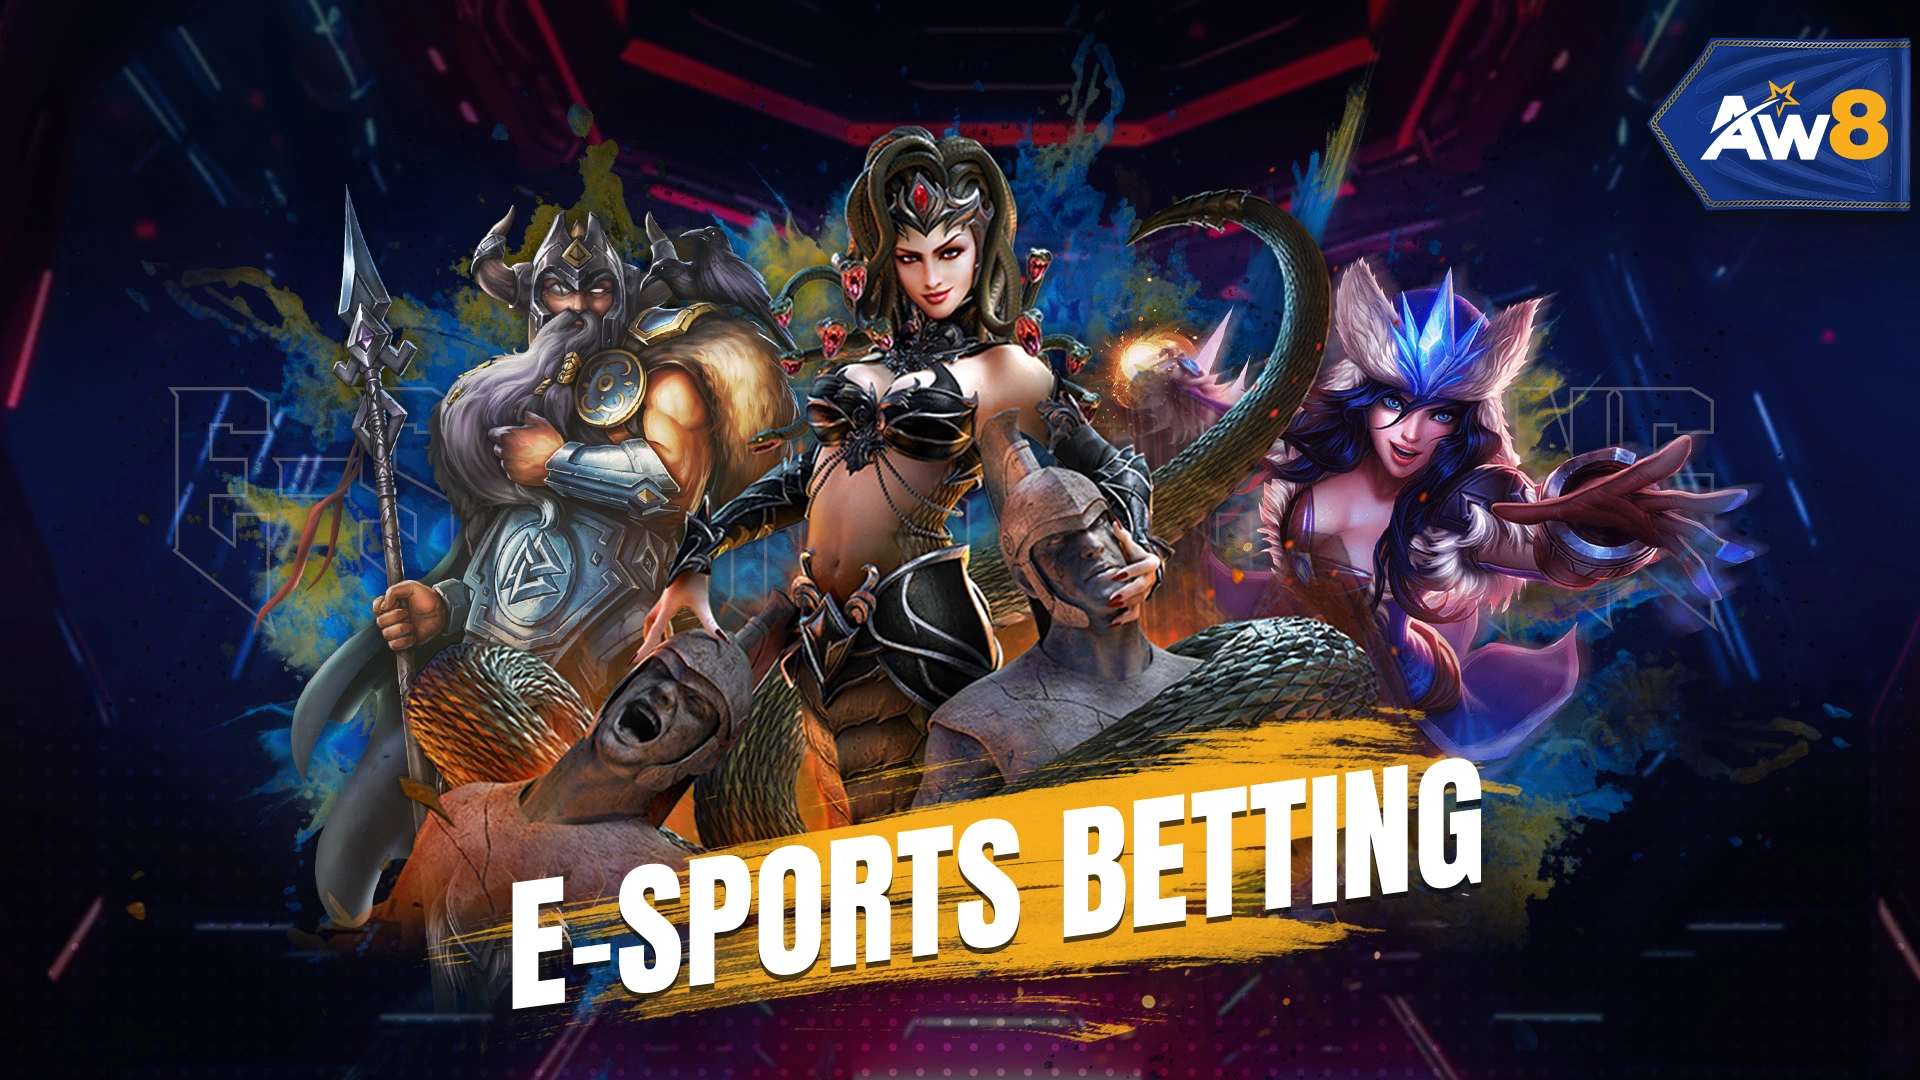 Aw8 Esports betting in malaysia